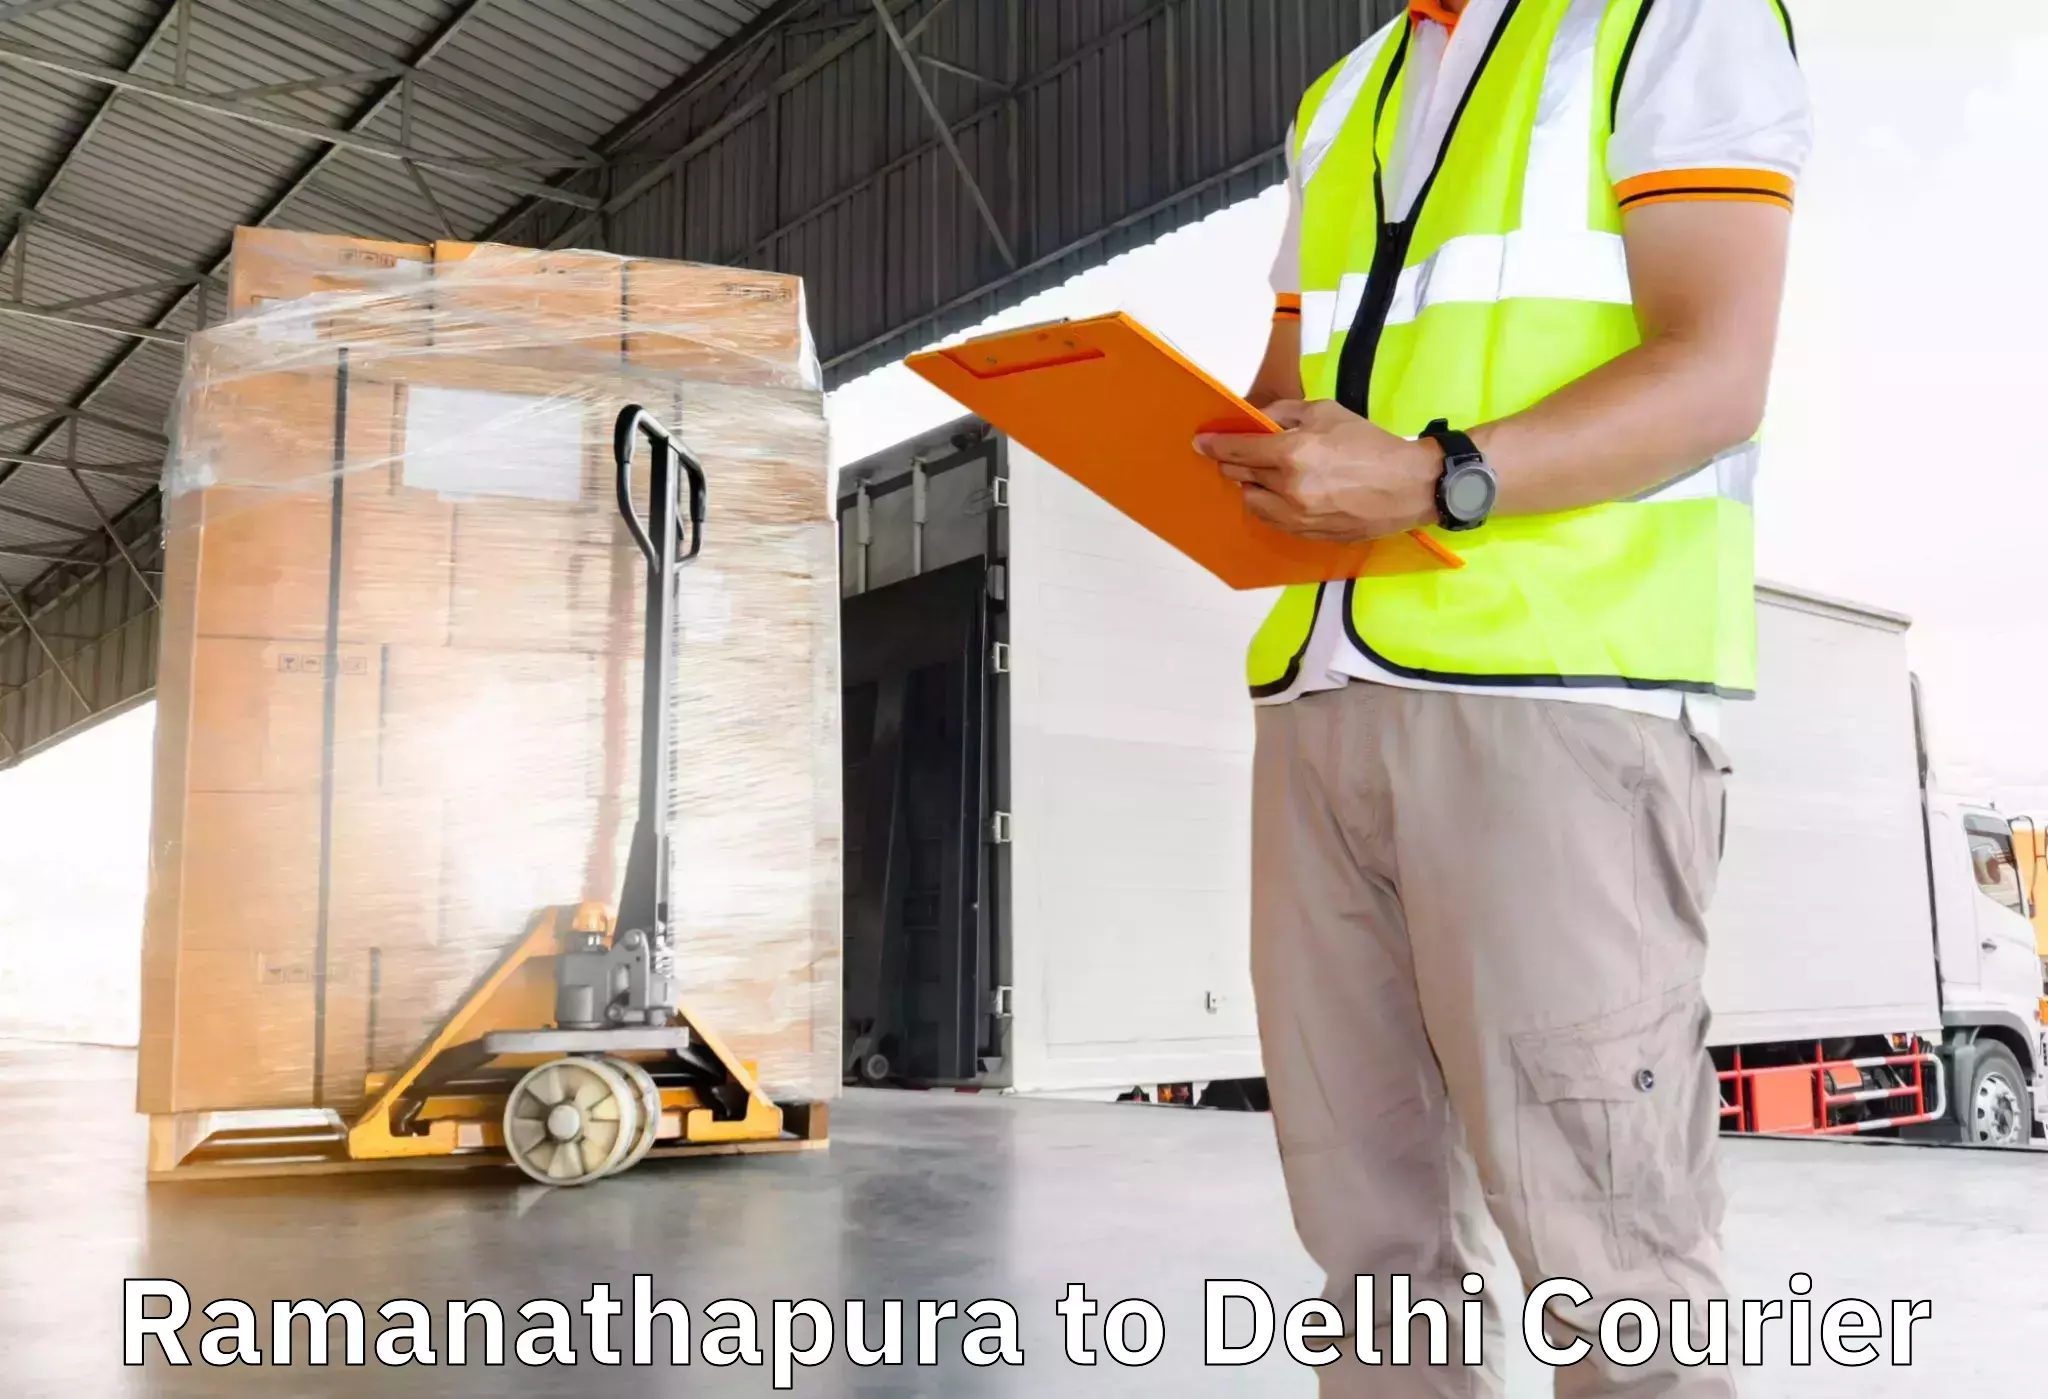 Efficient moving company Ramanathapura to NIT Delhi